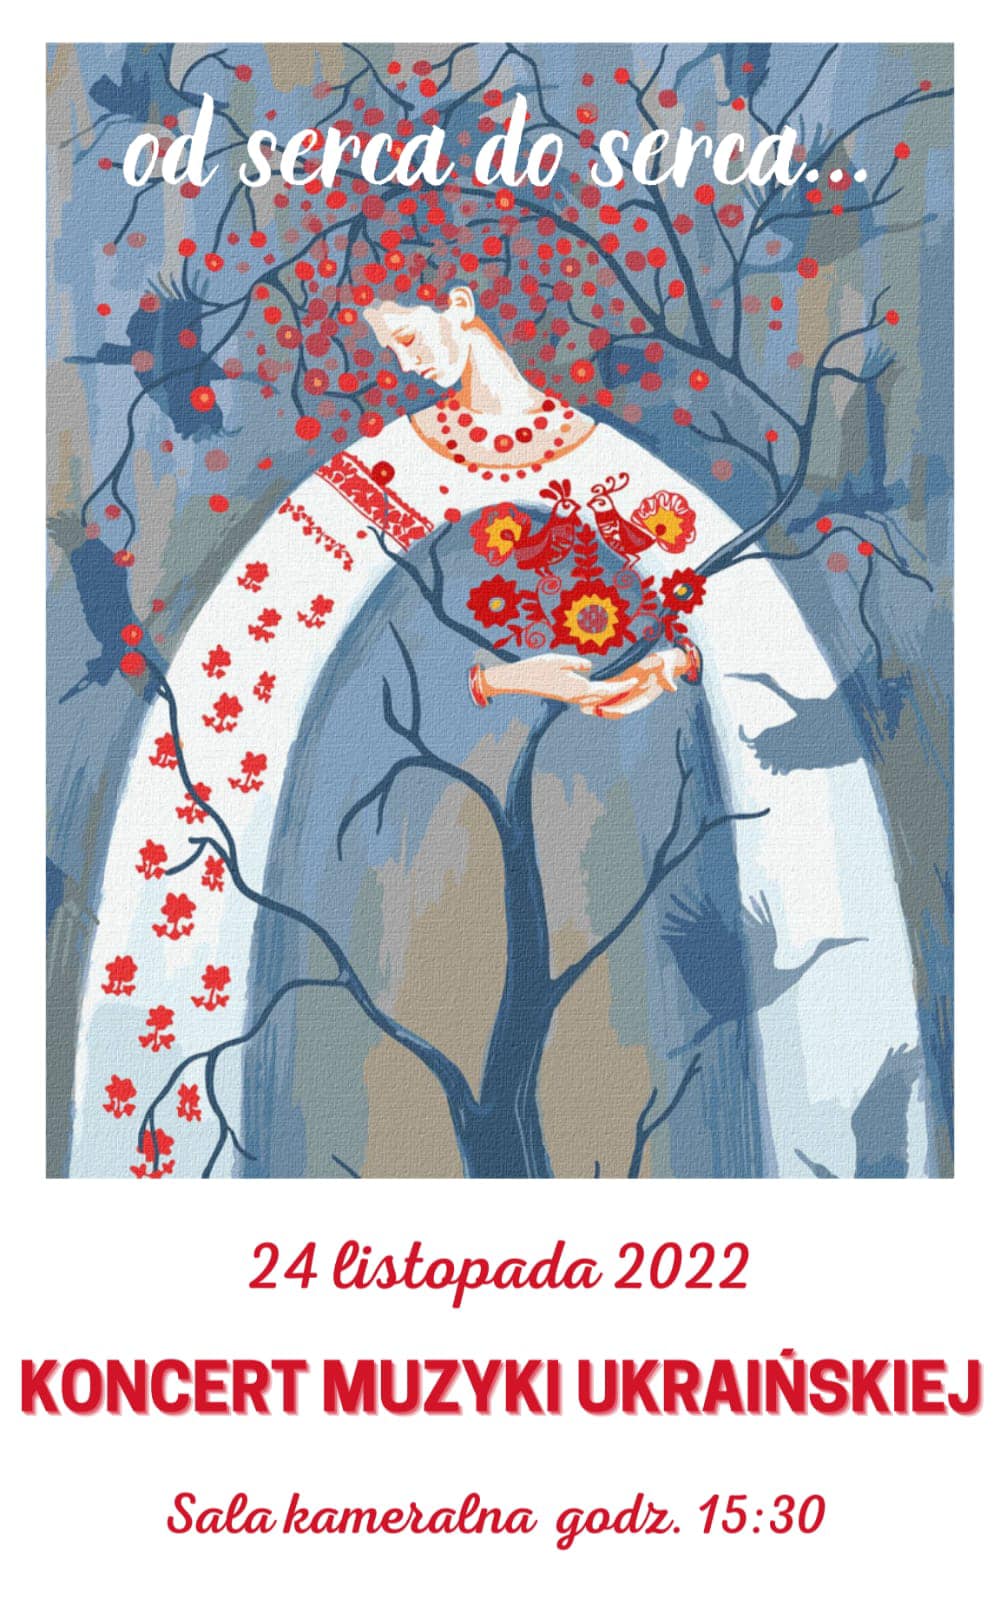 Plakat koncertu muzyki ukraińskiej "Od serca do serca..." przedstawia rysunek kobiety na tle drzewa trzymająca kwiaty i ptaki w stylistyce ludowej.